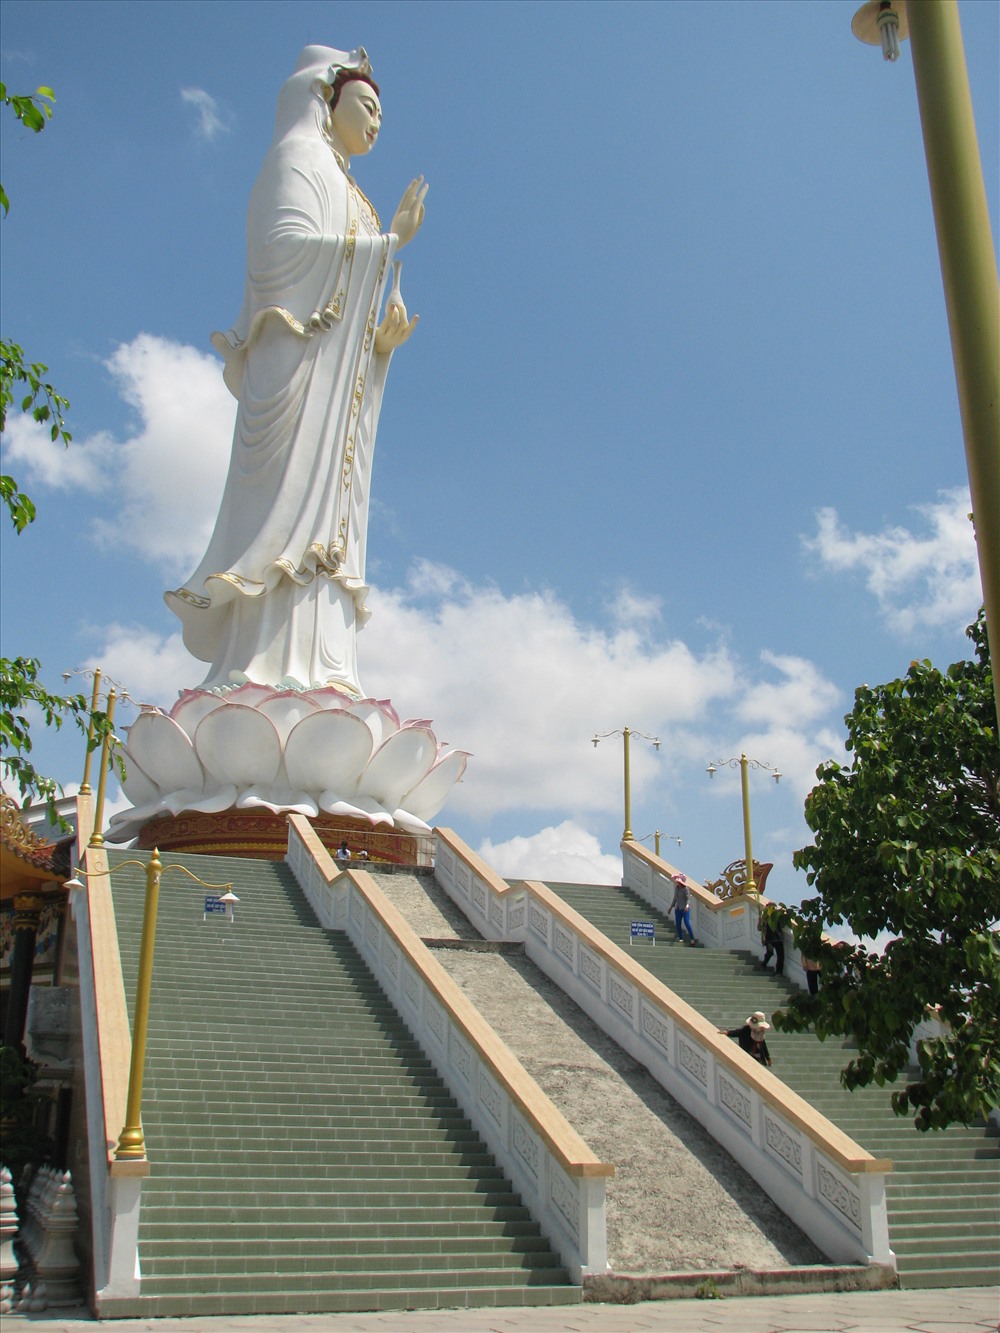 Chùa Hưng Thiện với tượng Phật bà Cao nhất ĐBSCL là nơi hành hương mùa Tết này (Nhật Hồ)